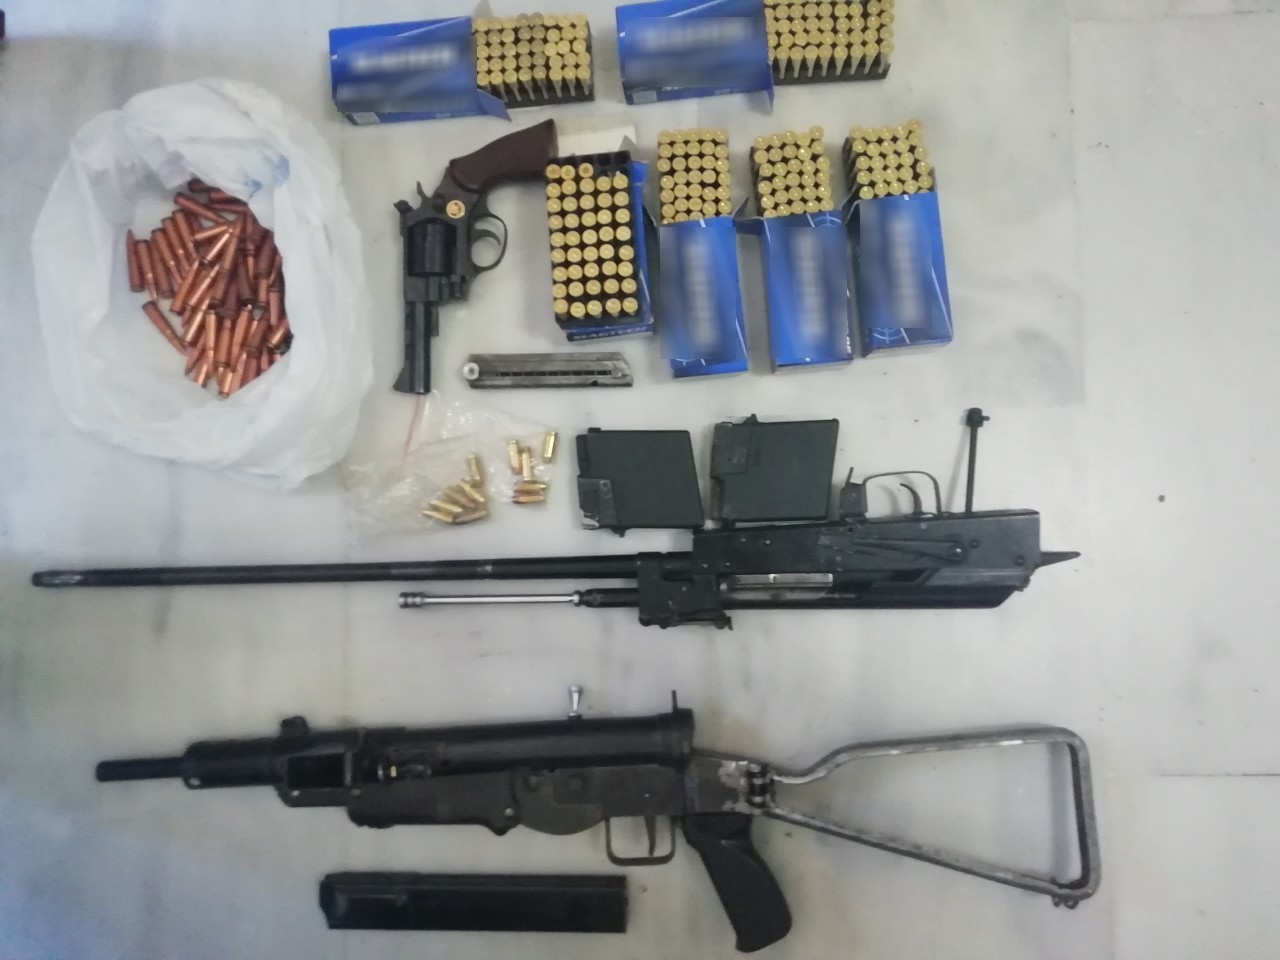 Υποπολυβόλο, περίστροφο και κυνηγετικό όπλο βρήκαν σε σπίτι στα Χανιά